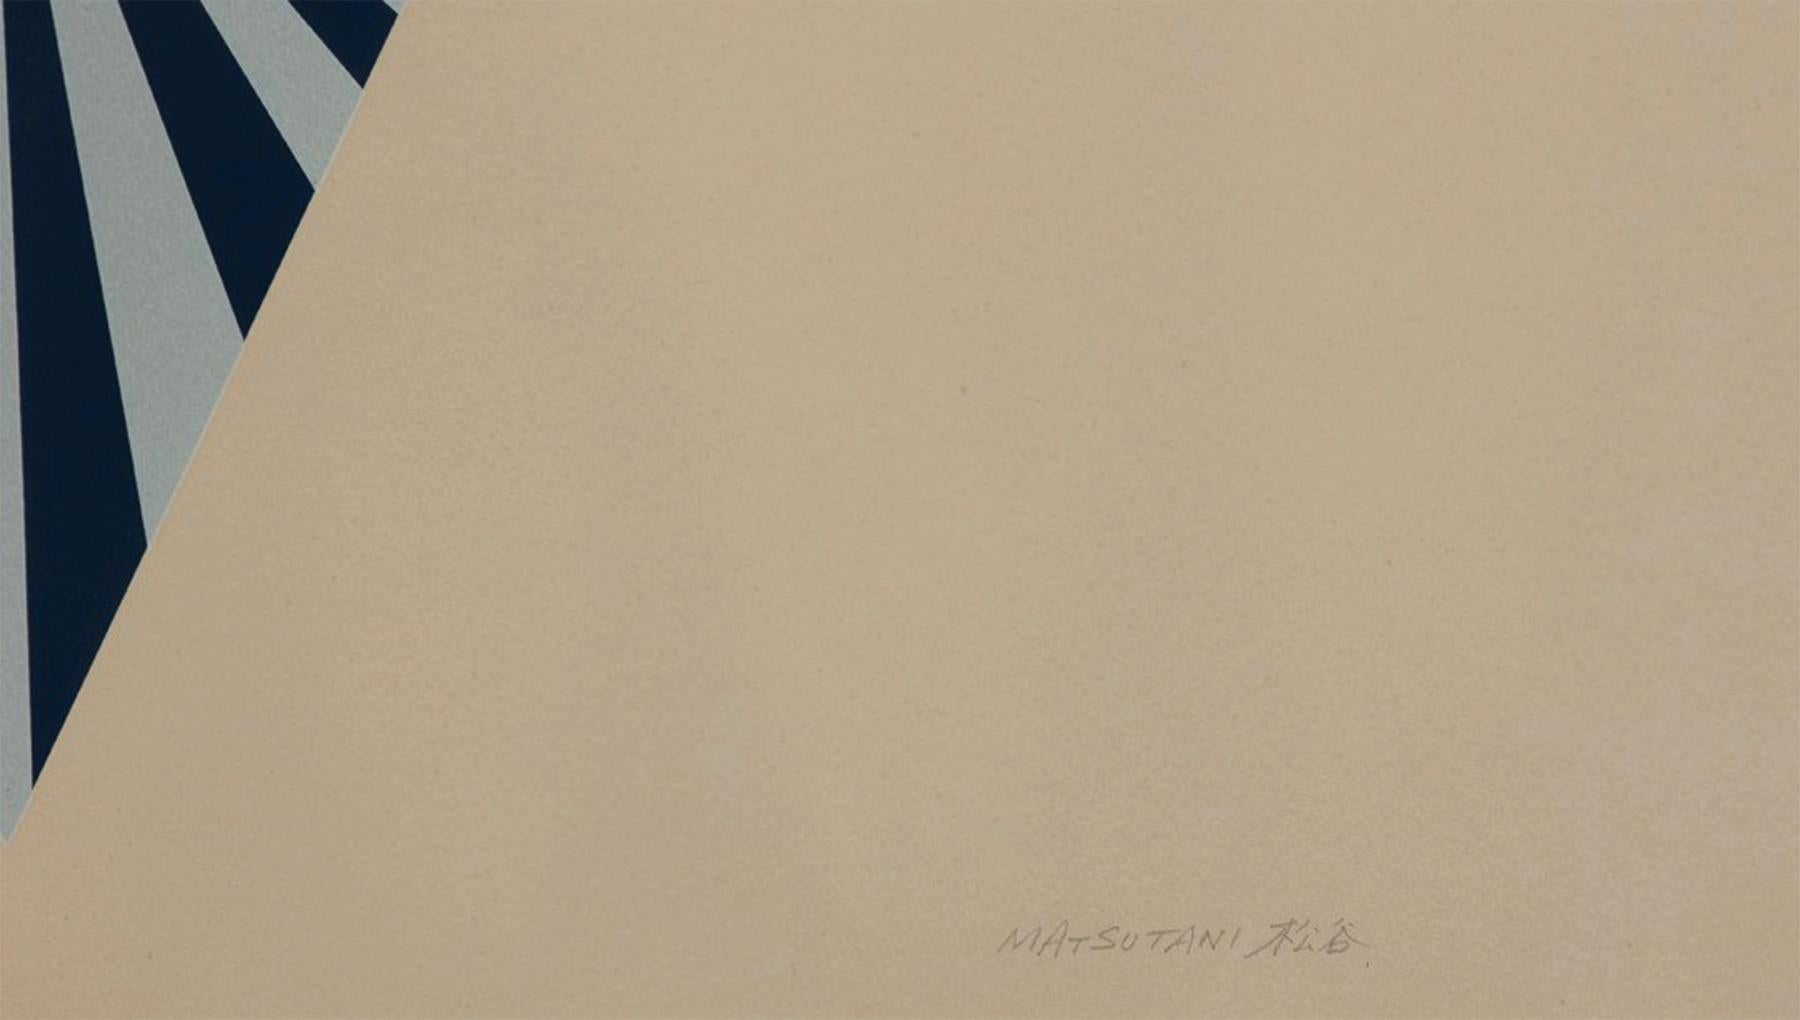 Takesada Matsutani (japonais, né en 1937)
I.L.A., 1971
Sérigraphie en couleurs
Édition 51/75 
28 x 27 pouces
28.25 x 27.25 pouces, encadré

Takesada Matsutani est un artiste japonais d'avant-garde basé à Paris et à Nishinomiya. Peintre depuis les